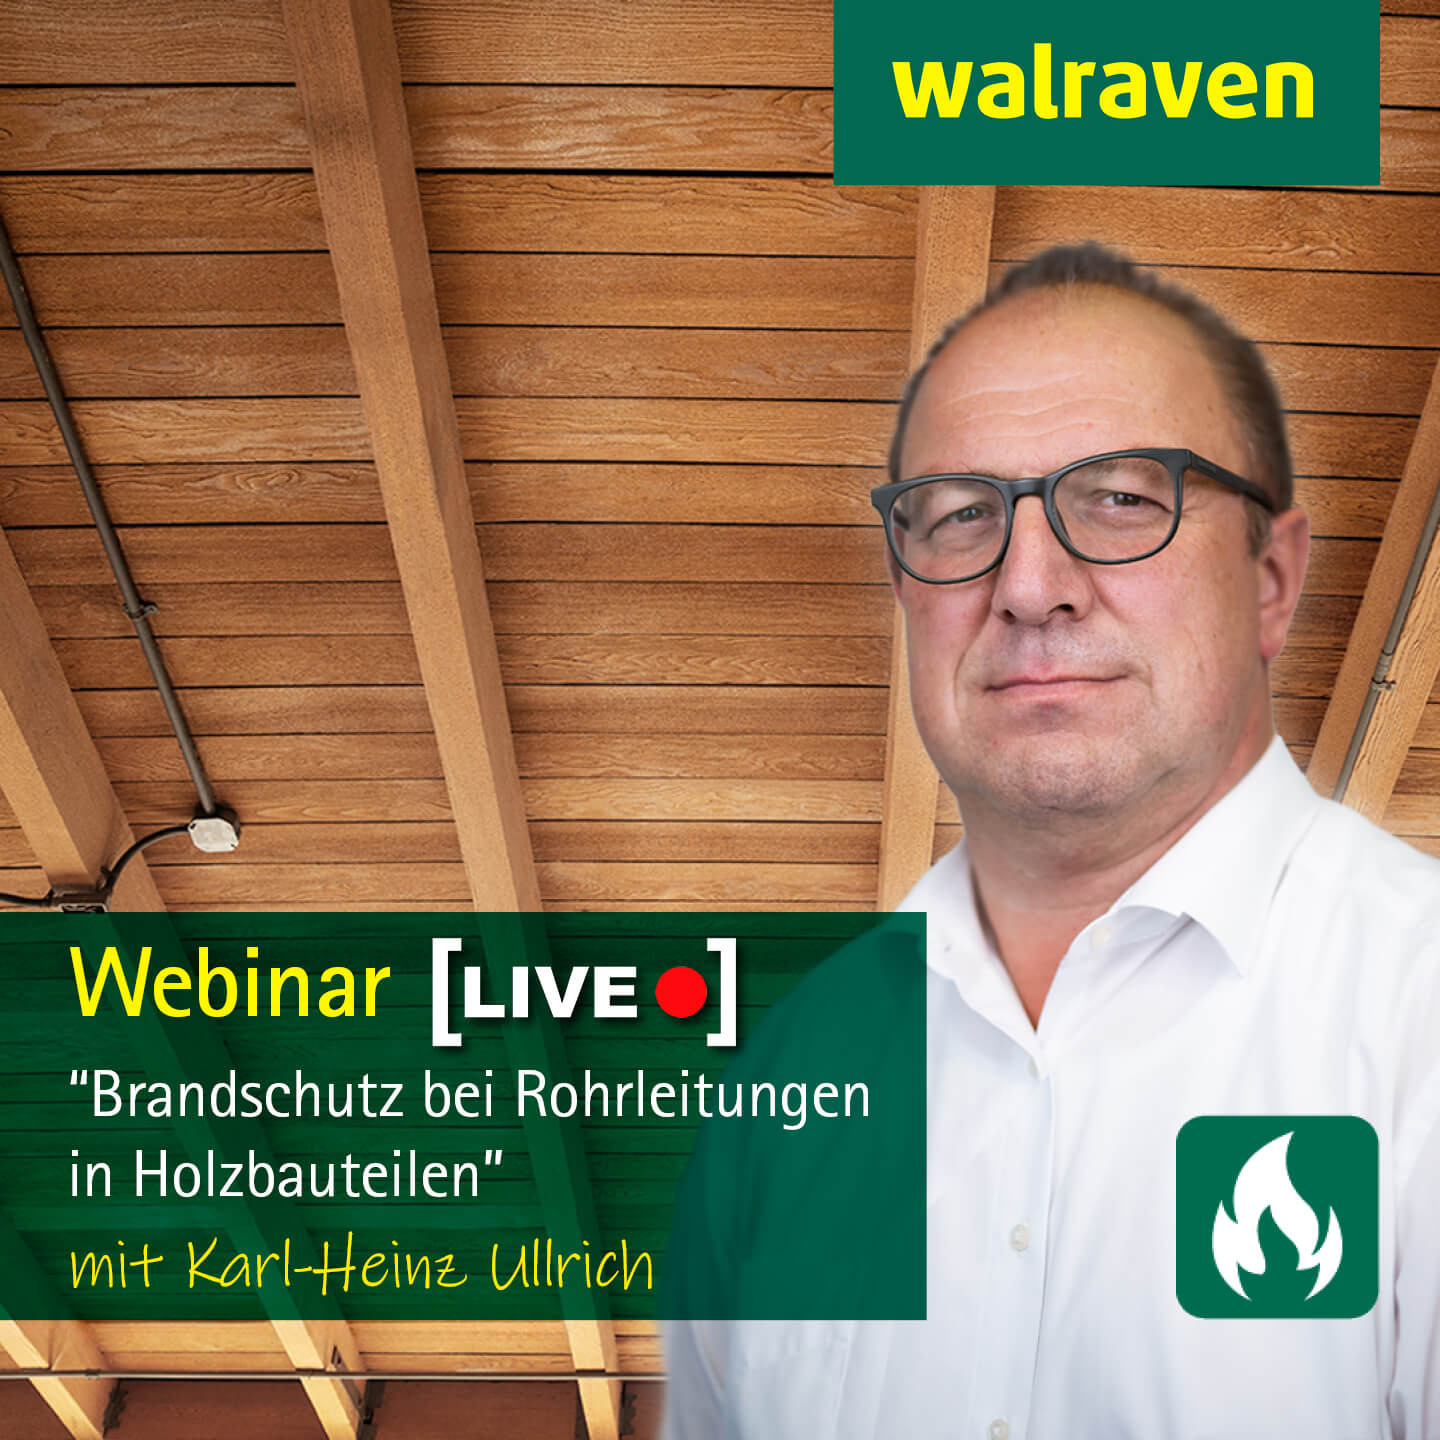 Live-Webinar „Brandschutz bei Rohrleitungen in Holzbauteilen“